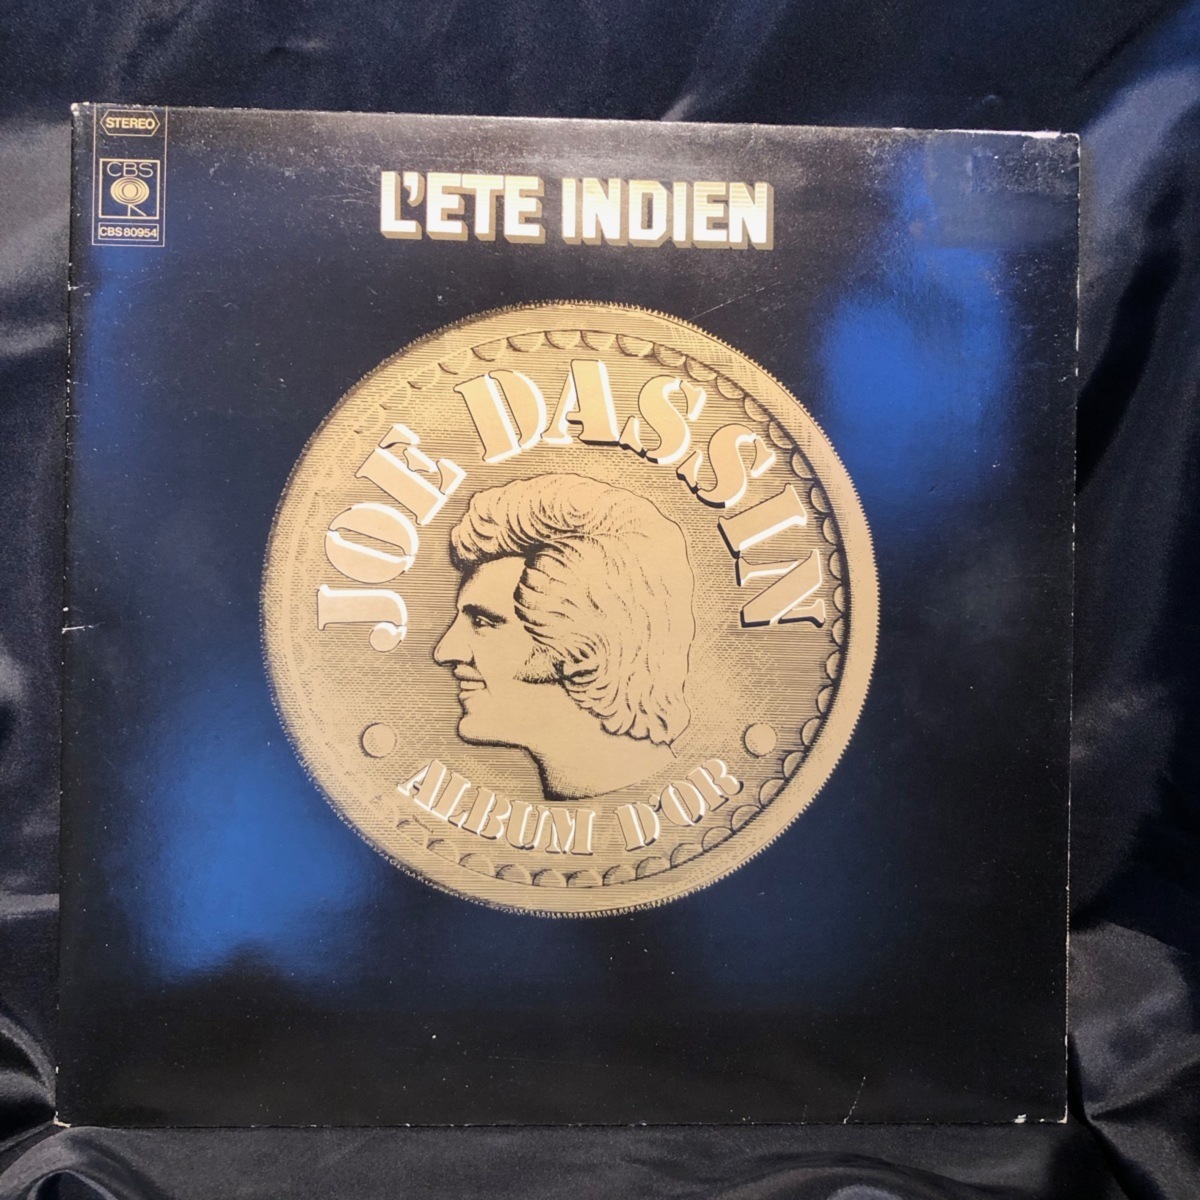 その他 Joe Dassin / L'Ete Indien Album D'Or LP CBS